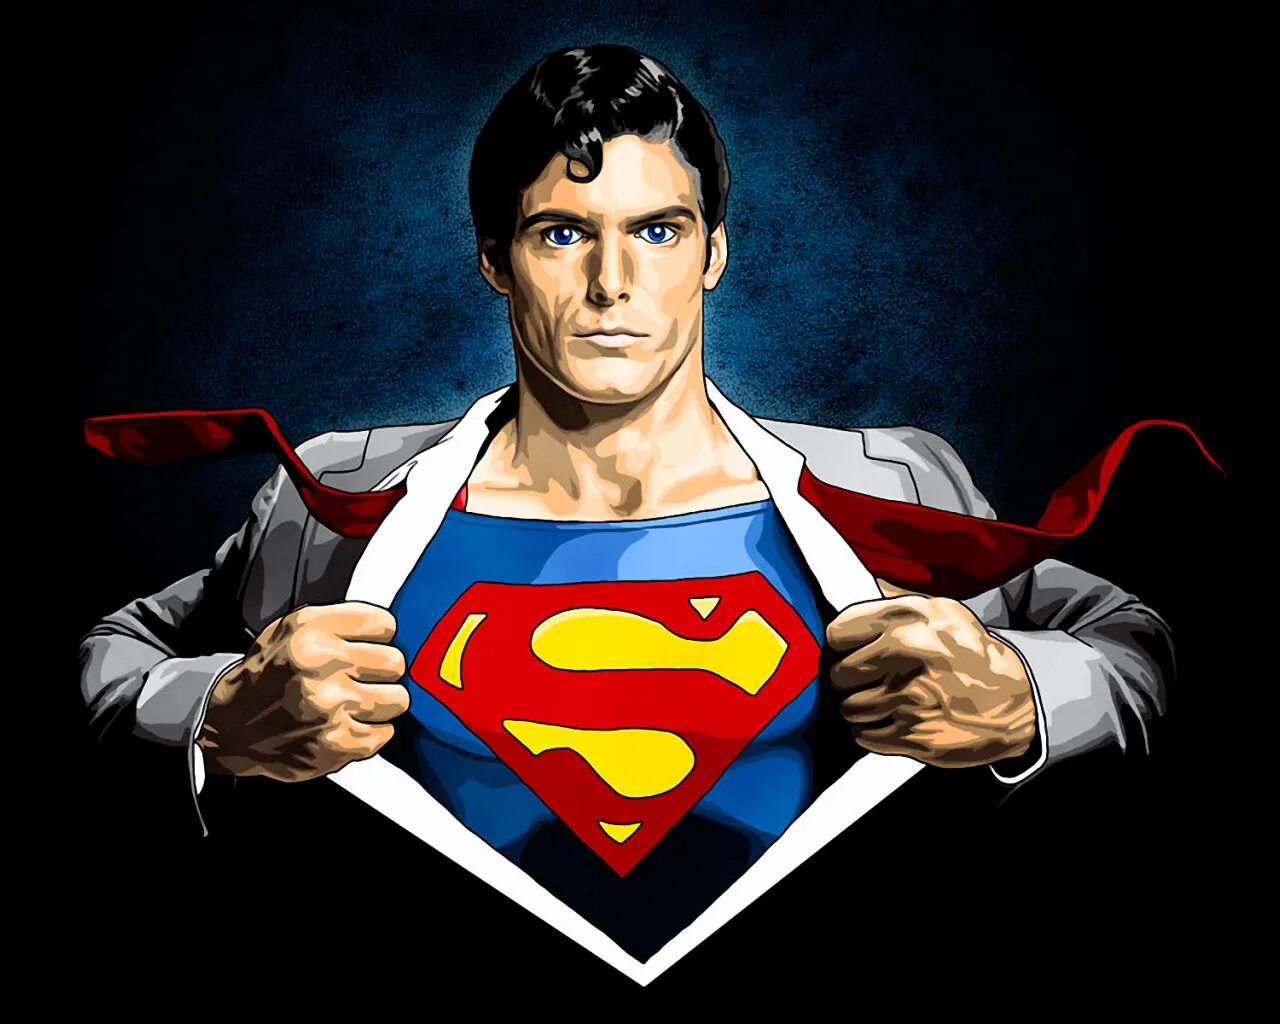 На телефон герою было. Кларк Кент Супермен. Супермен Кларк Кент арт. Кларк Кент Супермен комикс. Кларк Кент рисунок.